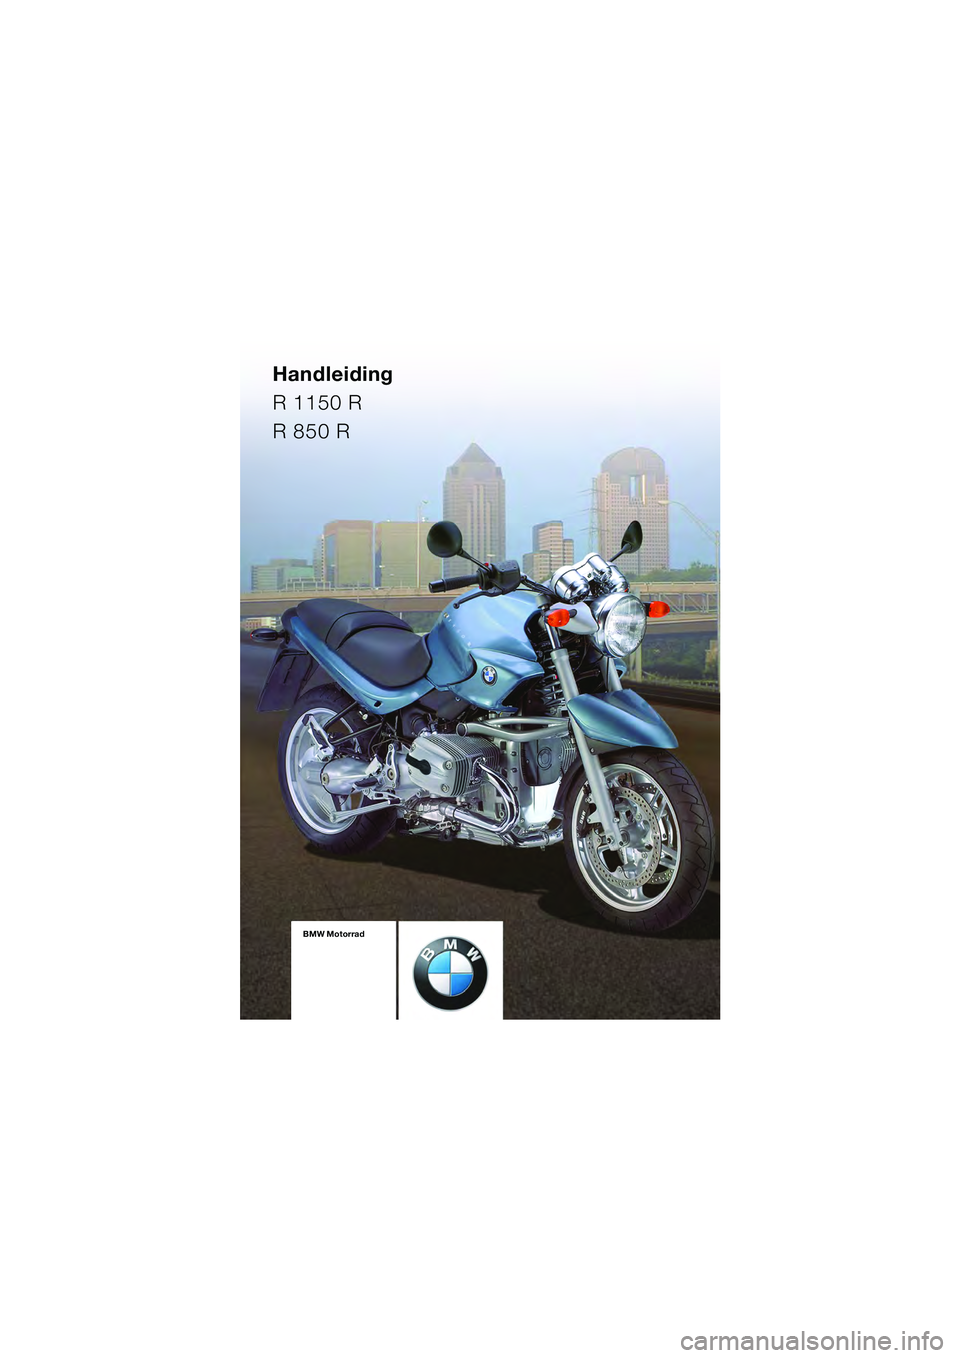 BMW MOTORRAD R 1150 R 2004  Handleiding (in Dutch) Handleiding
R 1150 R
R 850 R
BMW Motorrad
Boordliteratuur
bestaande uit:  
Handleiding  
en Onderhouds- 
handleidingBMW Motorrad
Boordliteratuur
bestaande uit:  
Handleiding  
en Onderhouds- 
handleid